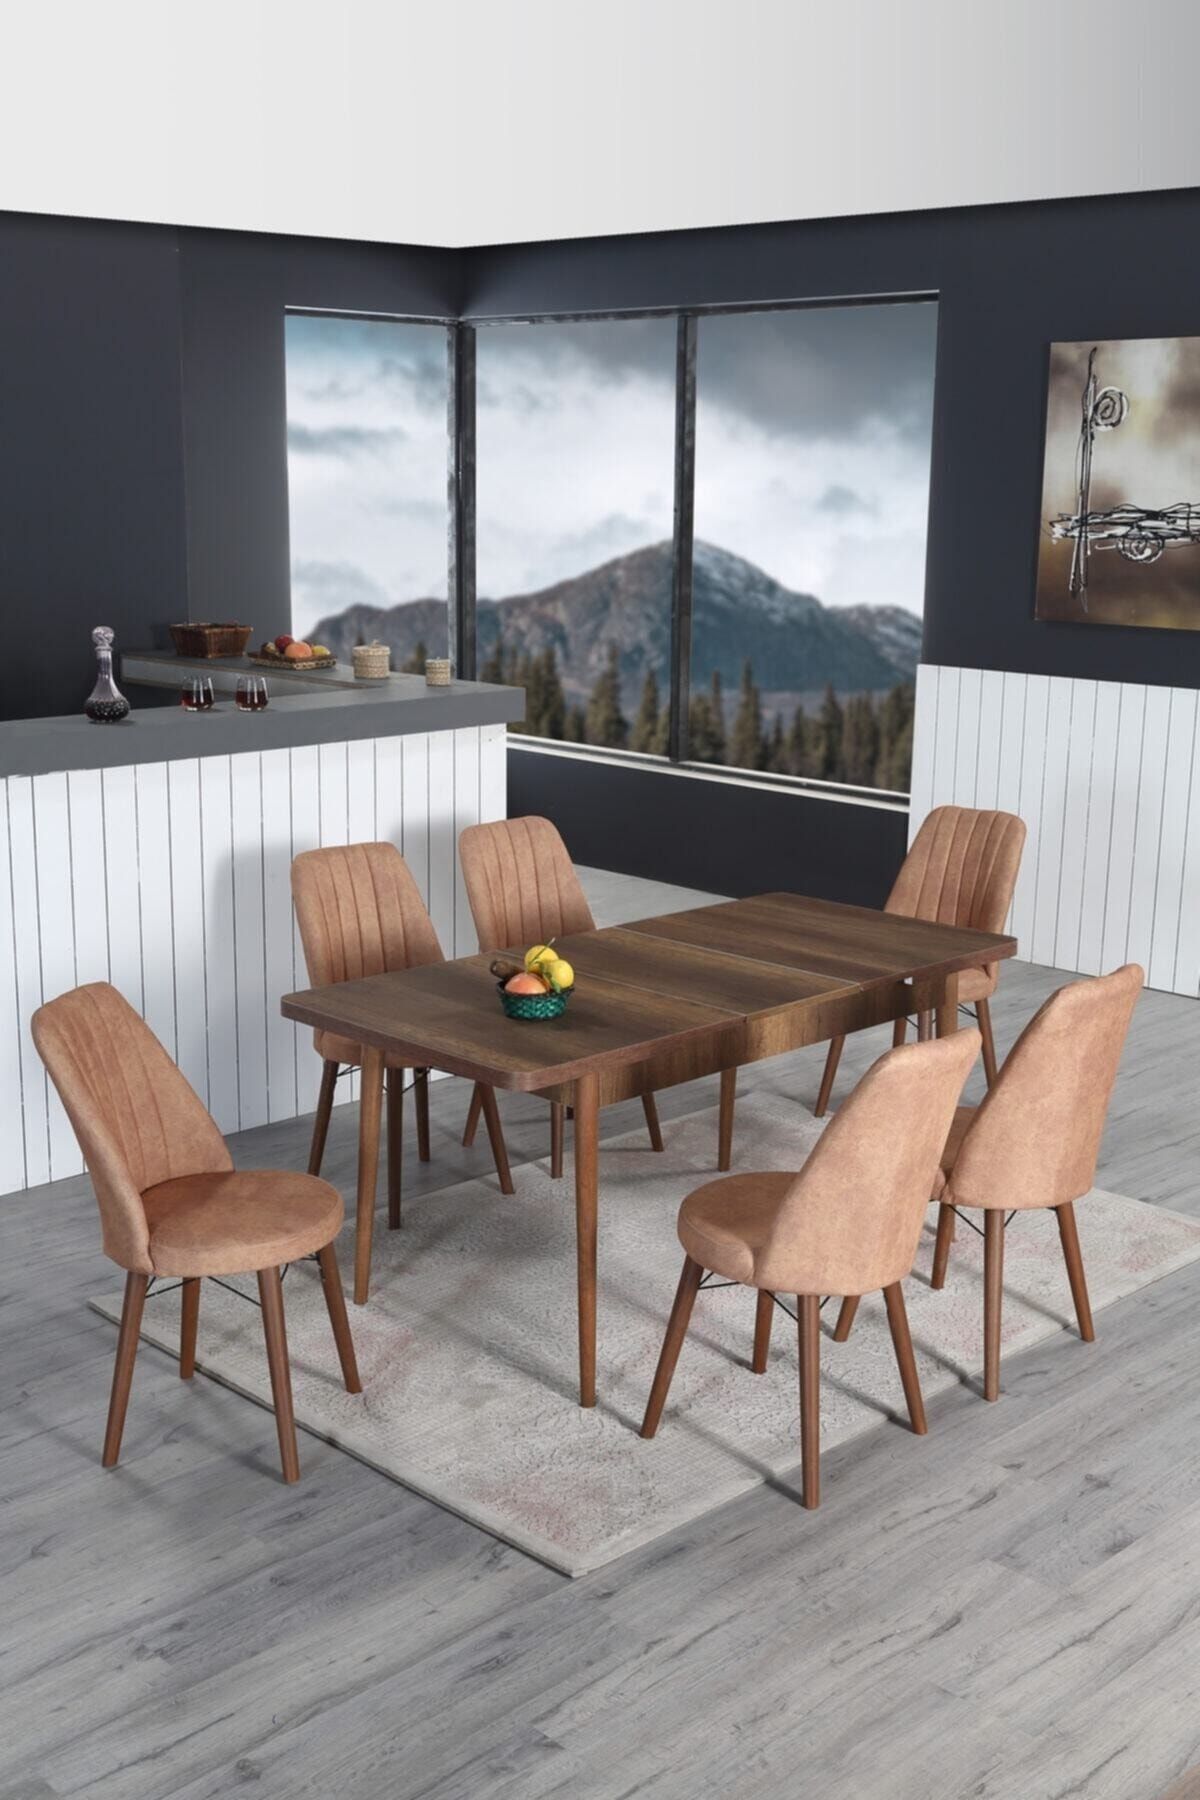 Lion 6 Kişilik Açılır Masa Sandalye Takımı Mutfak Masası Takımı Salon Masası Yemek Masası Masa Takımı